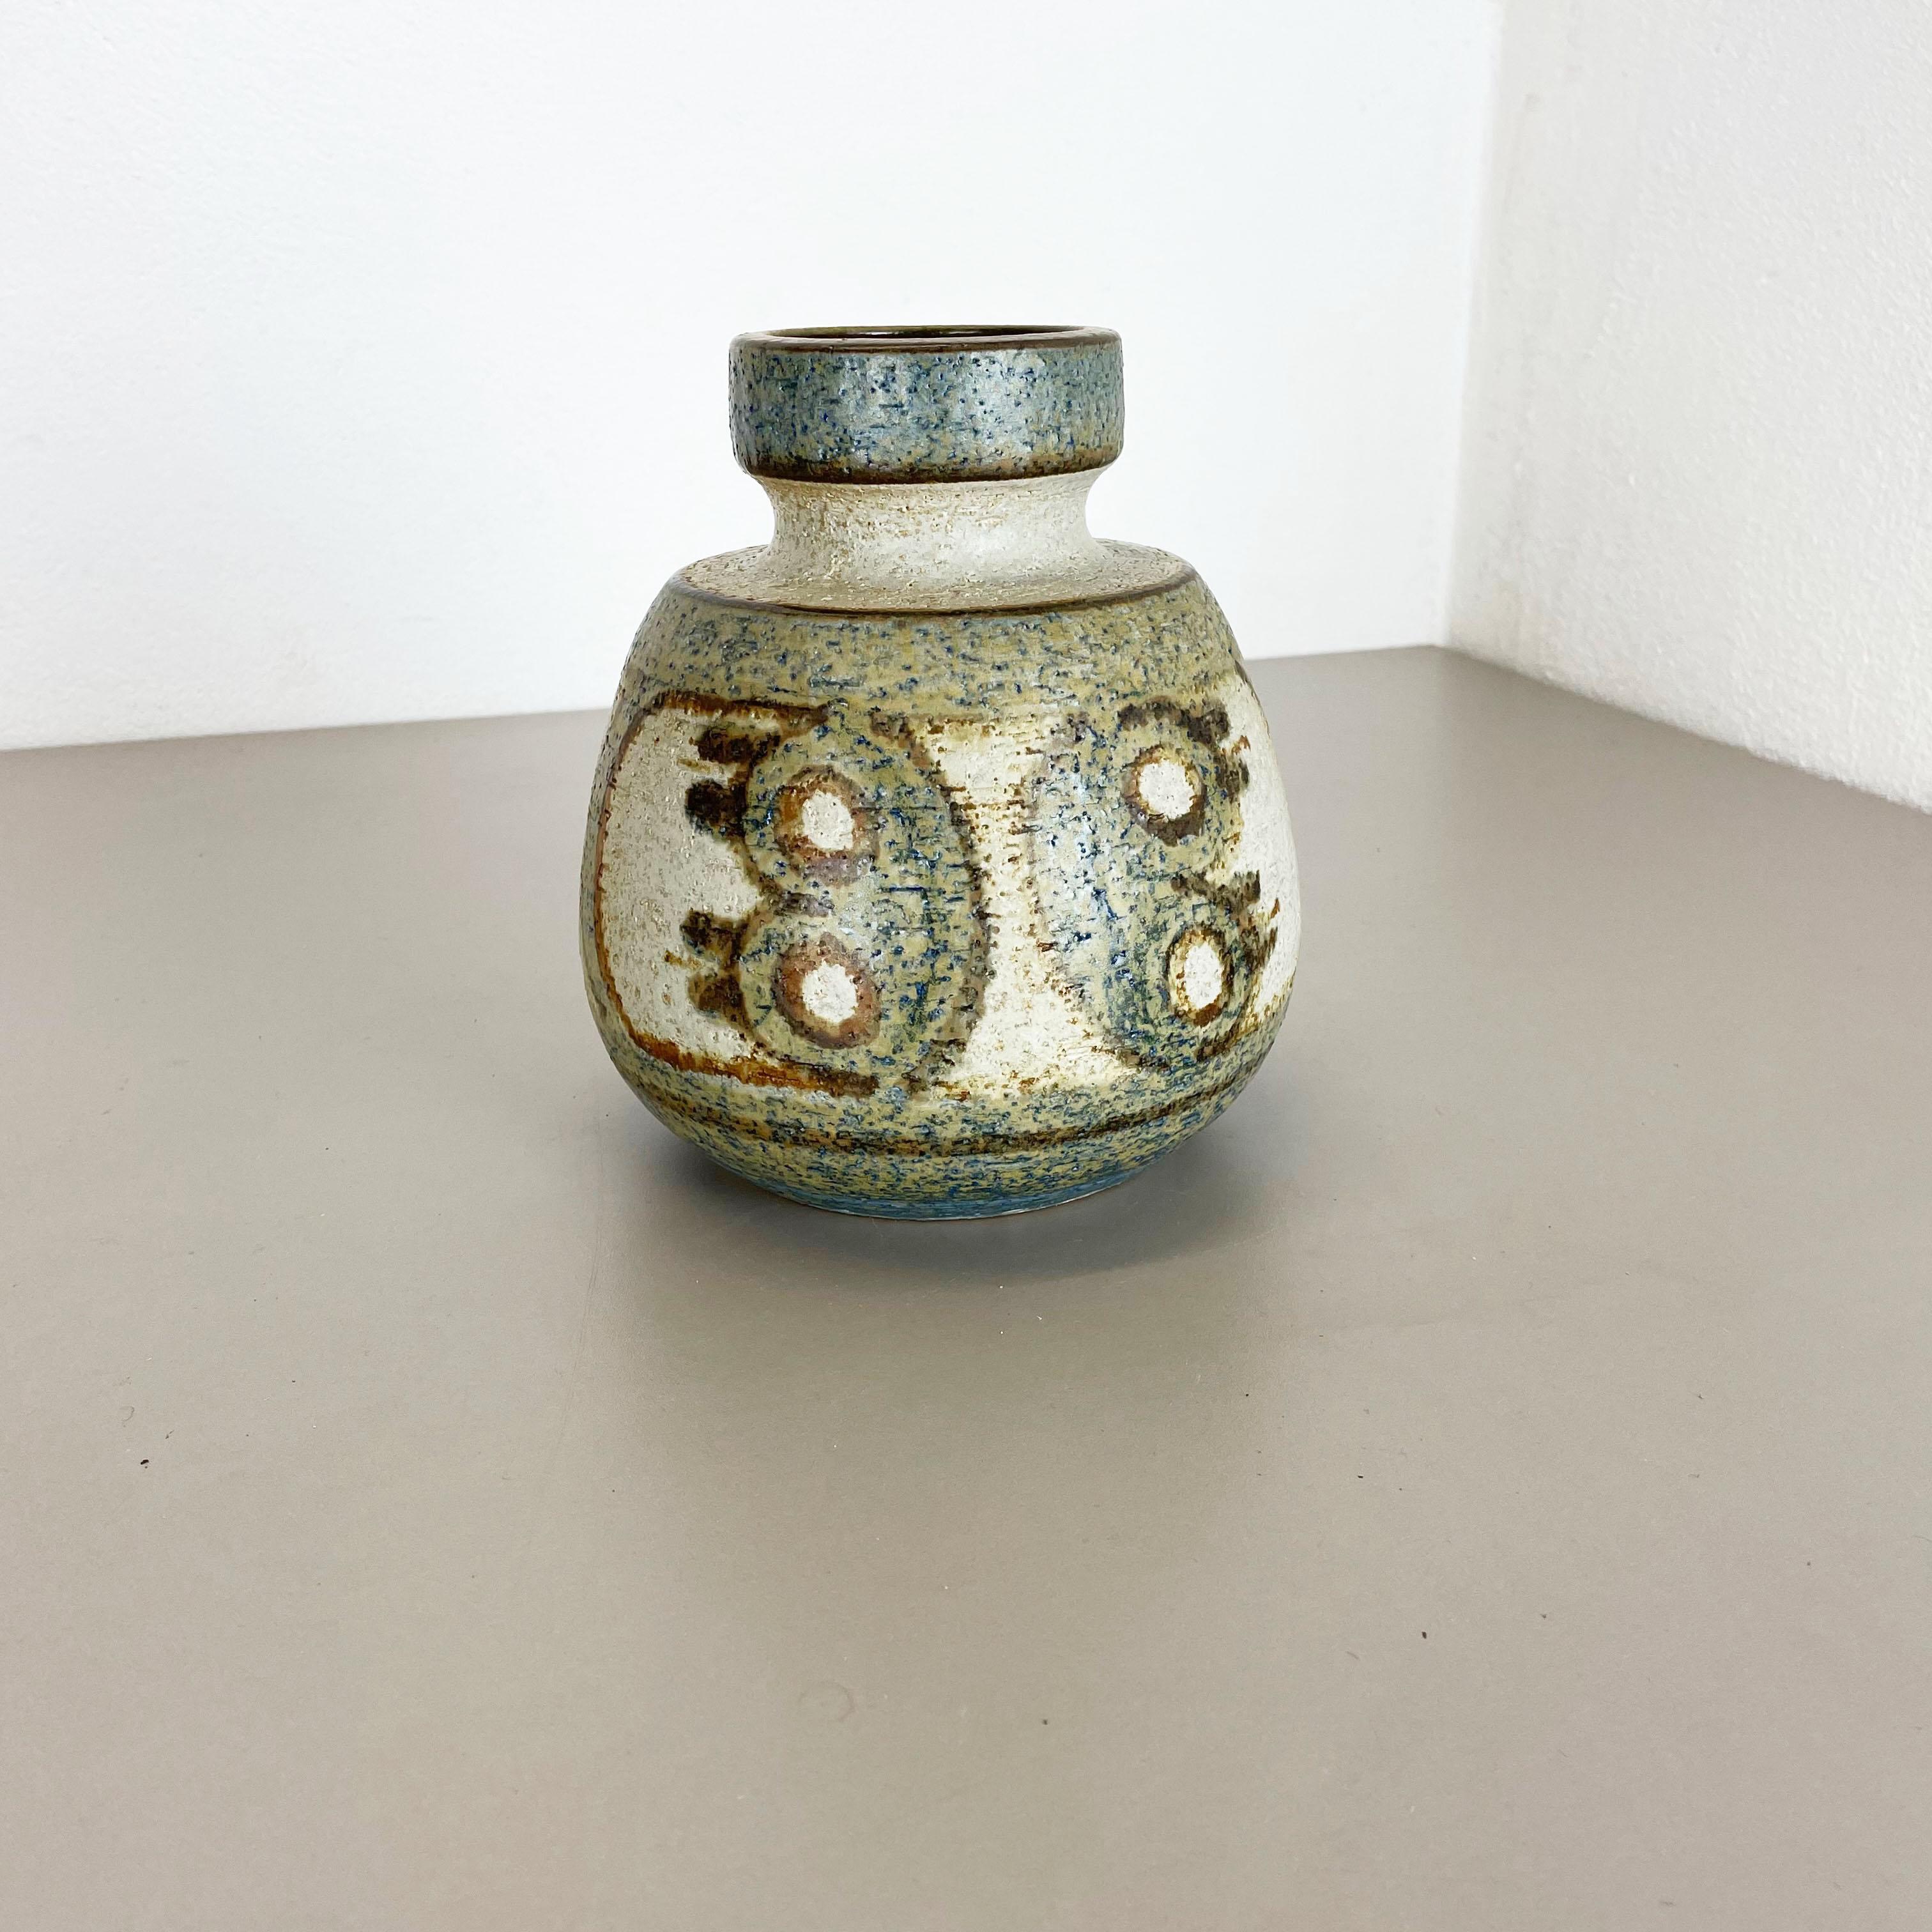 Artikel:

Keramik Vase Objekt


Produzent:

SOHOLM, Dänemark




Jahrzehnt:

1970s





Diese originelle Vintage-Keramikvase wurde in den 1970er Jahren von SOHOLM in Dänemark entworfen und hergestellt. Sie ist aus massivem Ton